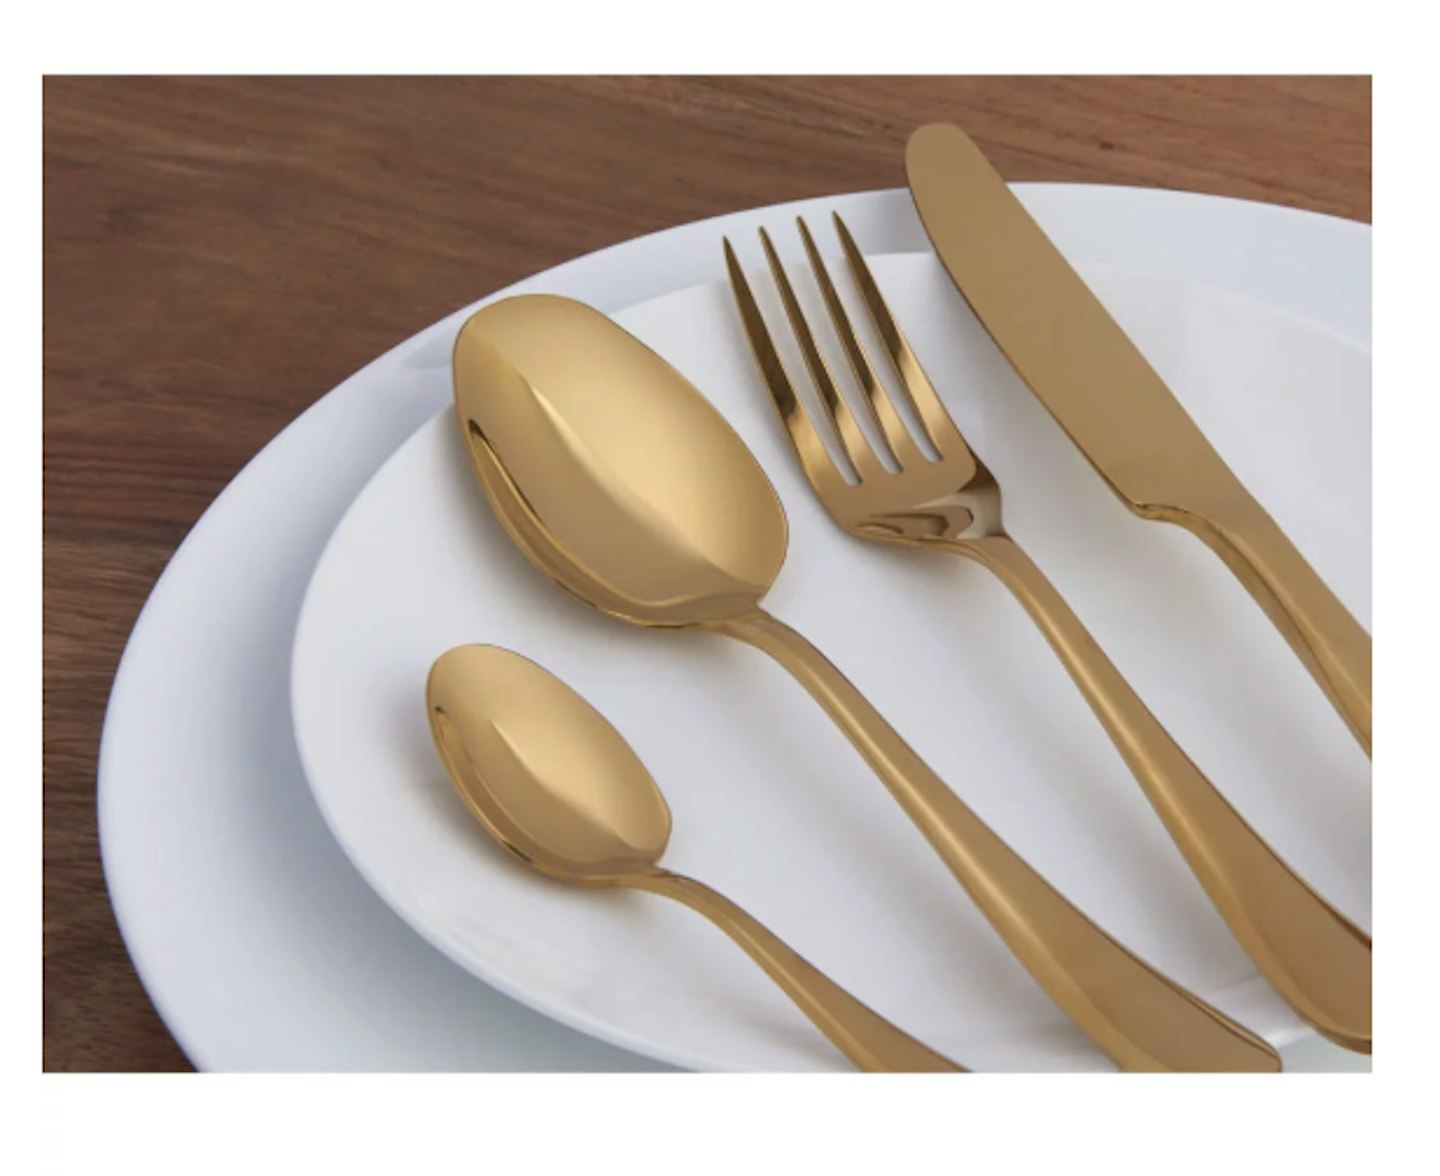 Wilko 16-piece Gold Effect Cutlery Set, £20.00